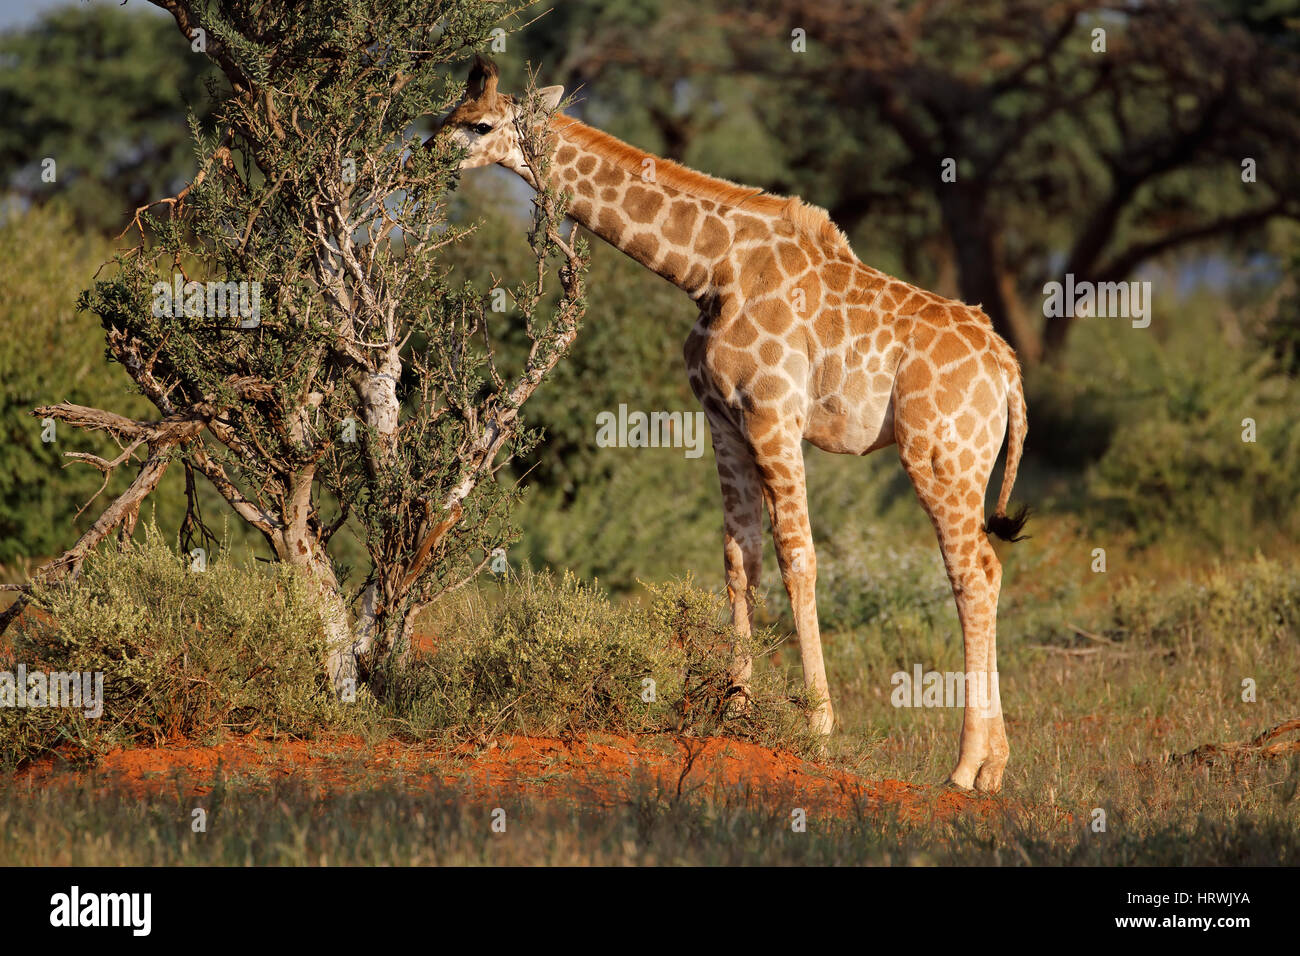 A young giraffe (Giraffa camelopardalis) feeding on a tree, South Africa Stock Photo